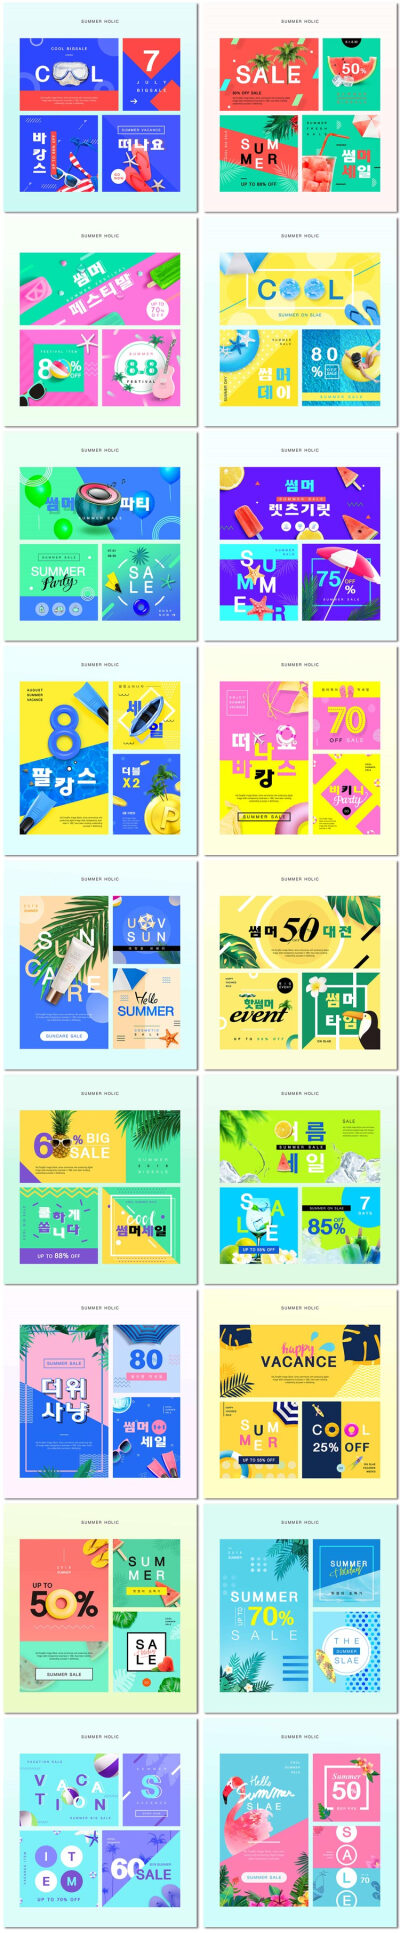 清凉夏日手机端旅游电商节日活动网页促销海报psd模板素材设计